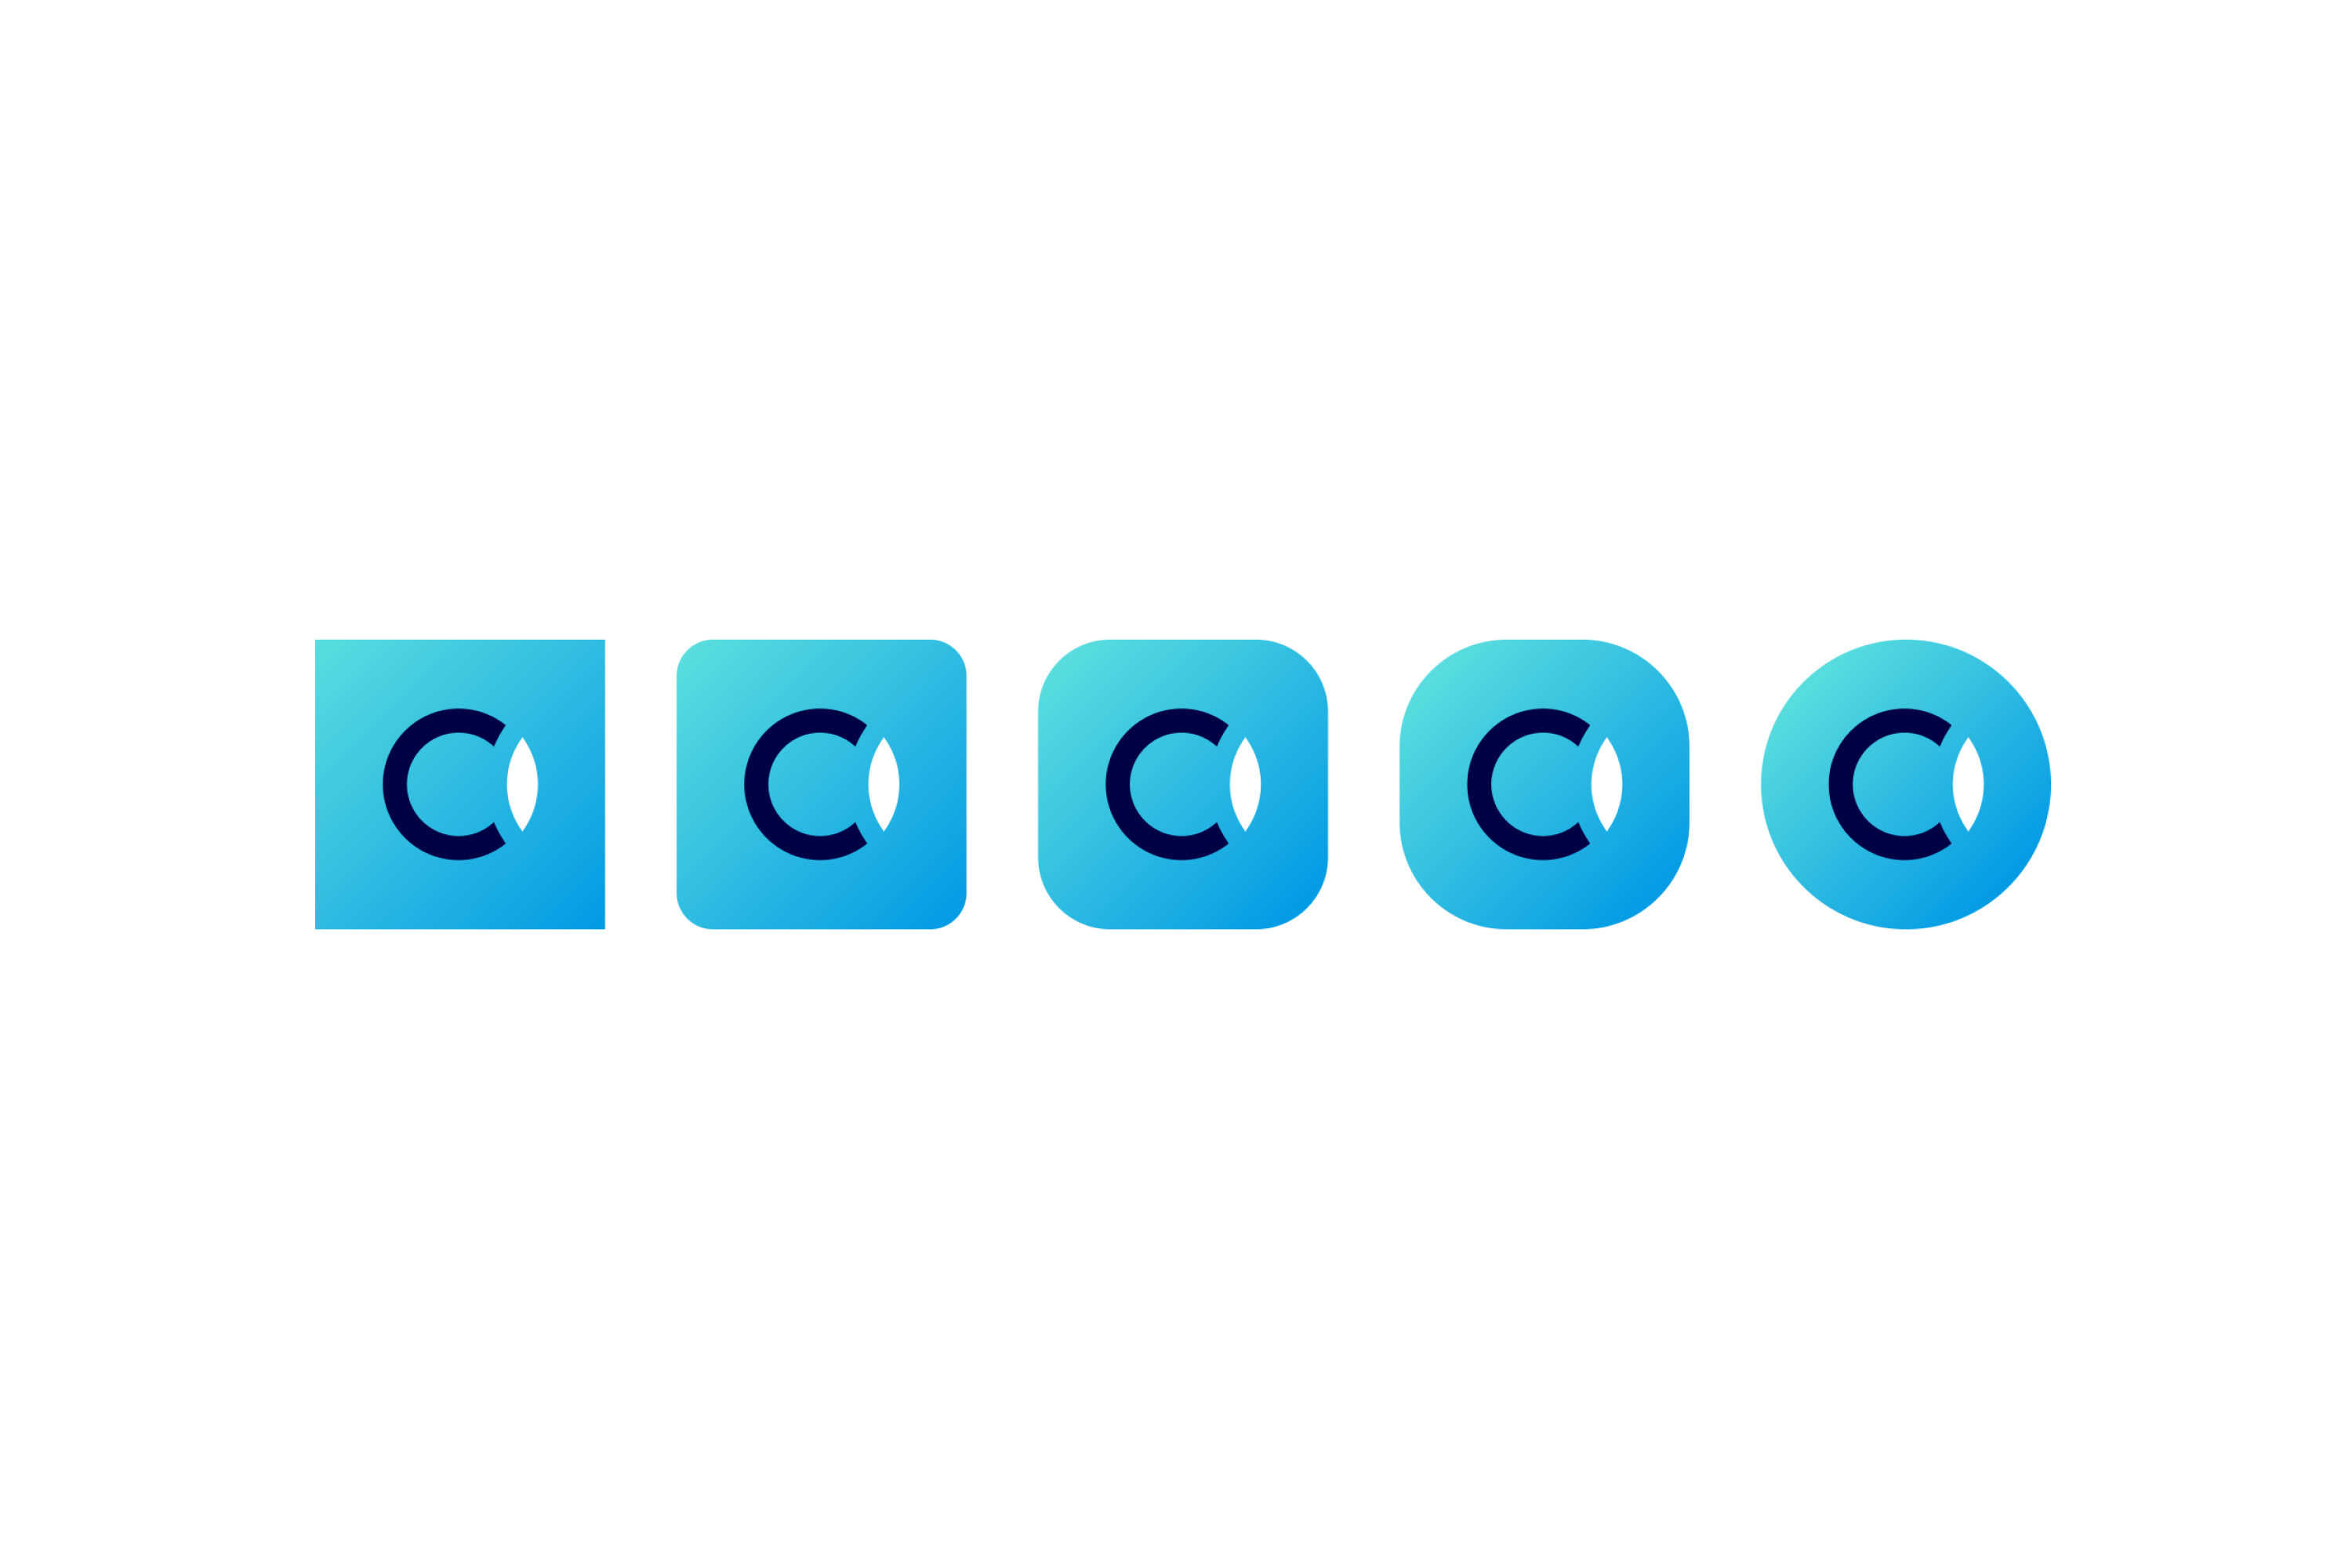 Cc Logo Icon